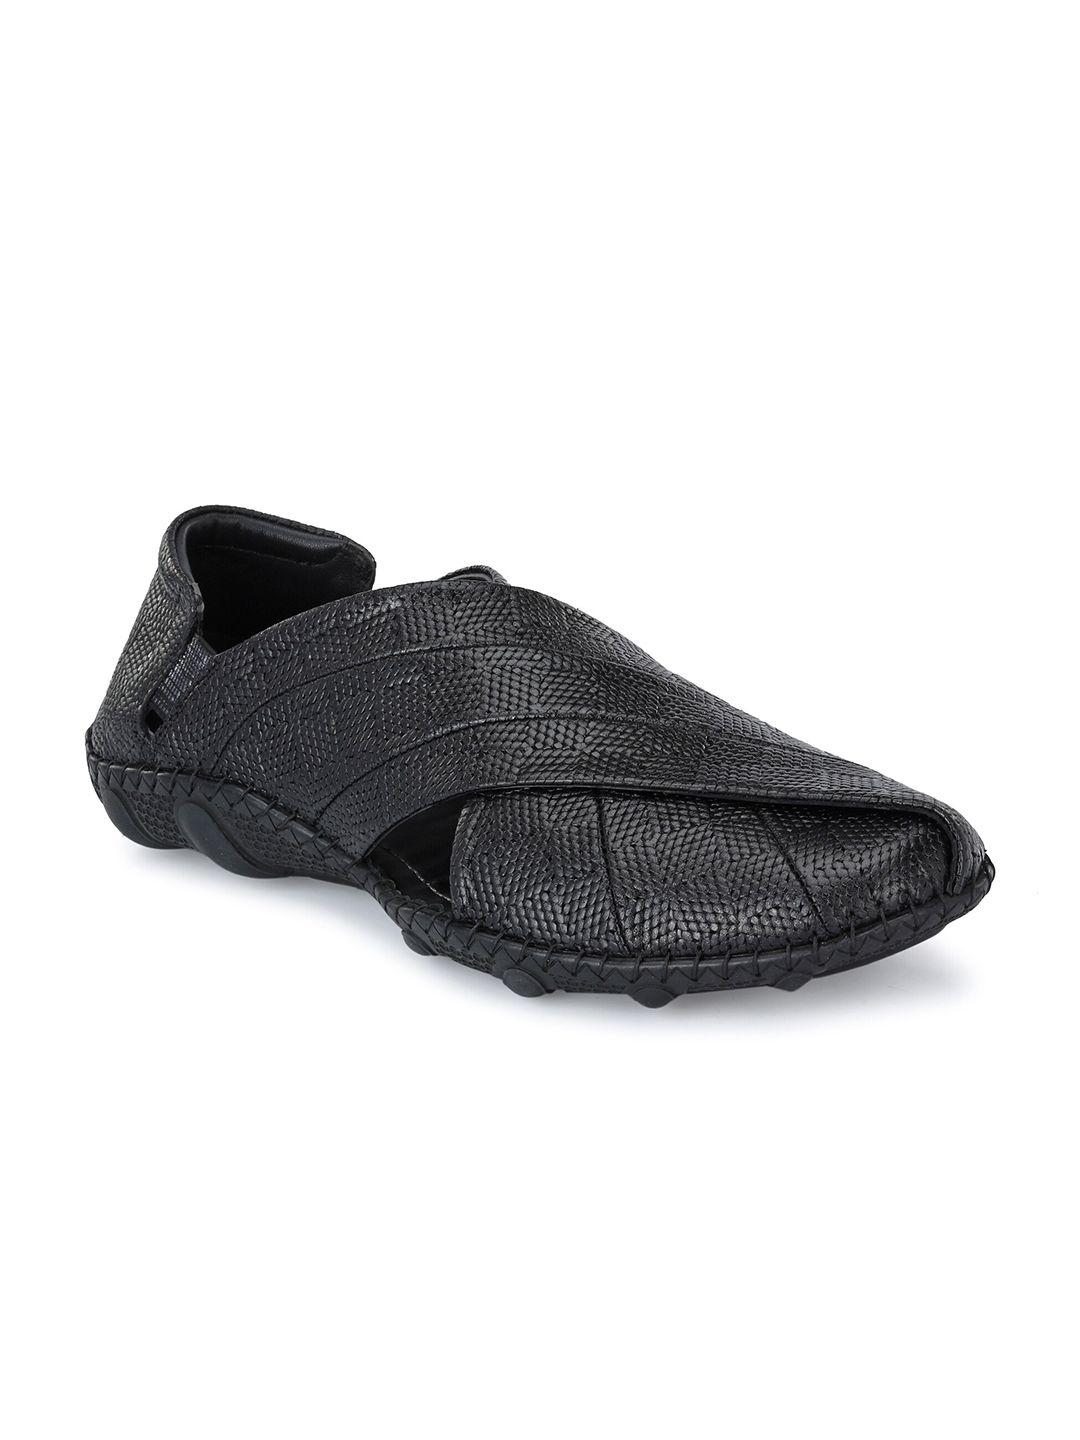 Hitz Men Black Leather Shoe-Style Sandals